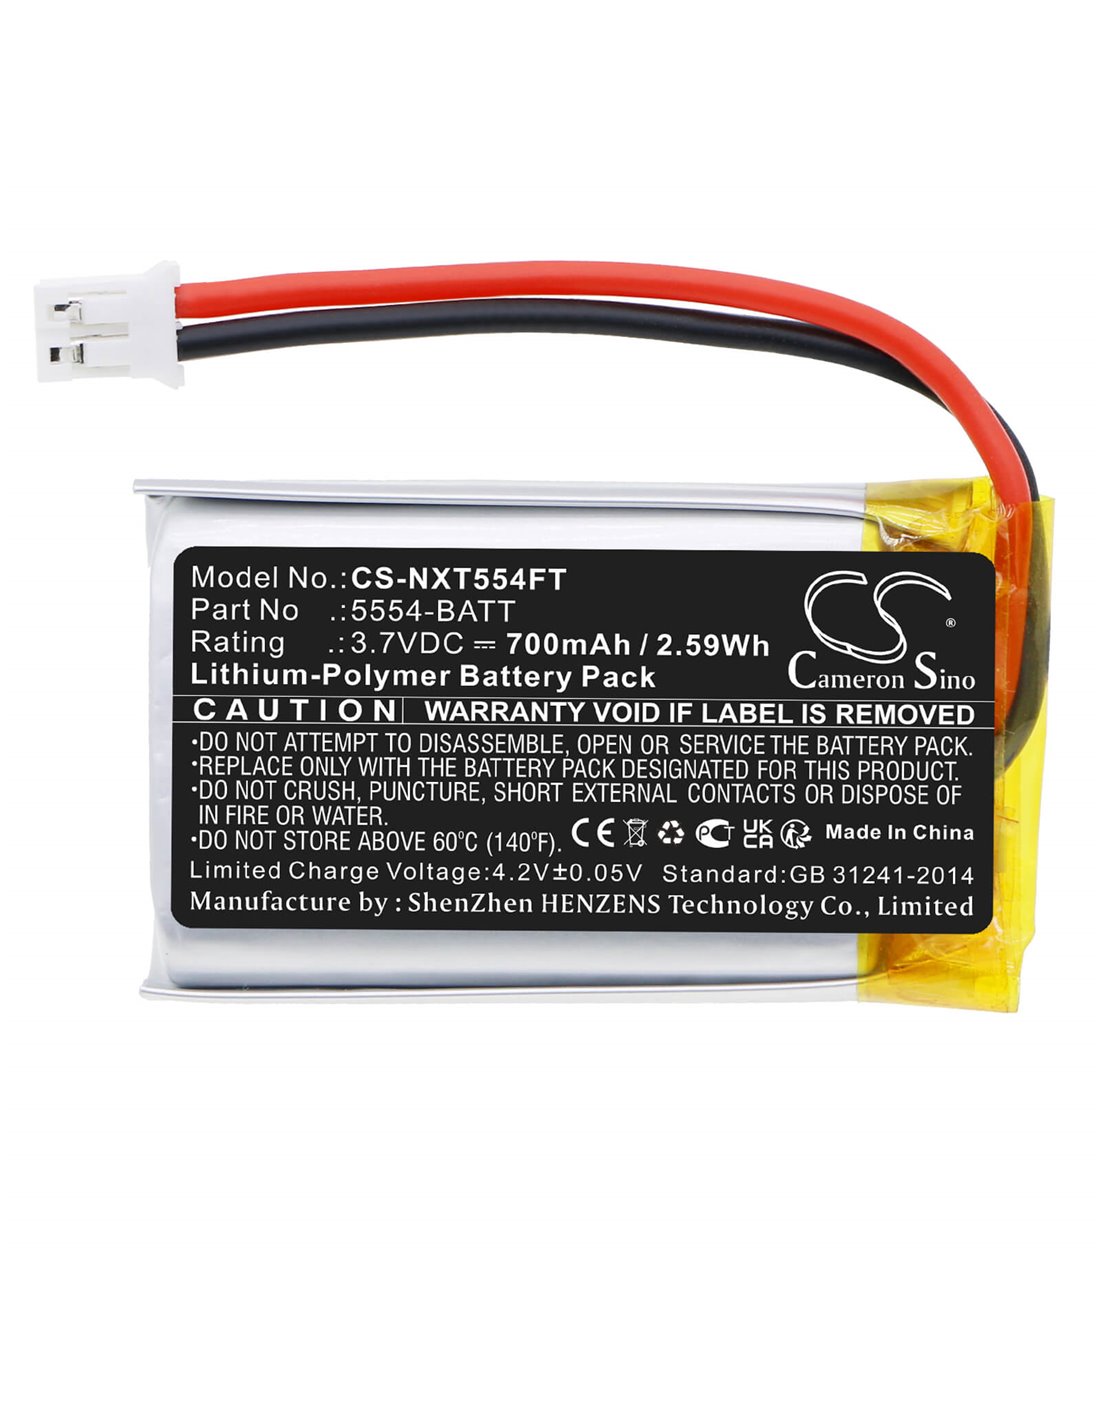 3.7V, Li-Polymer, 700mAh, Battery fits Nightstick Xpr-5554g Headlamp, 2.59Wh